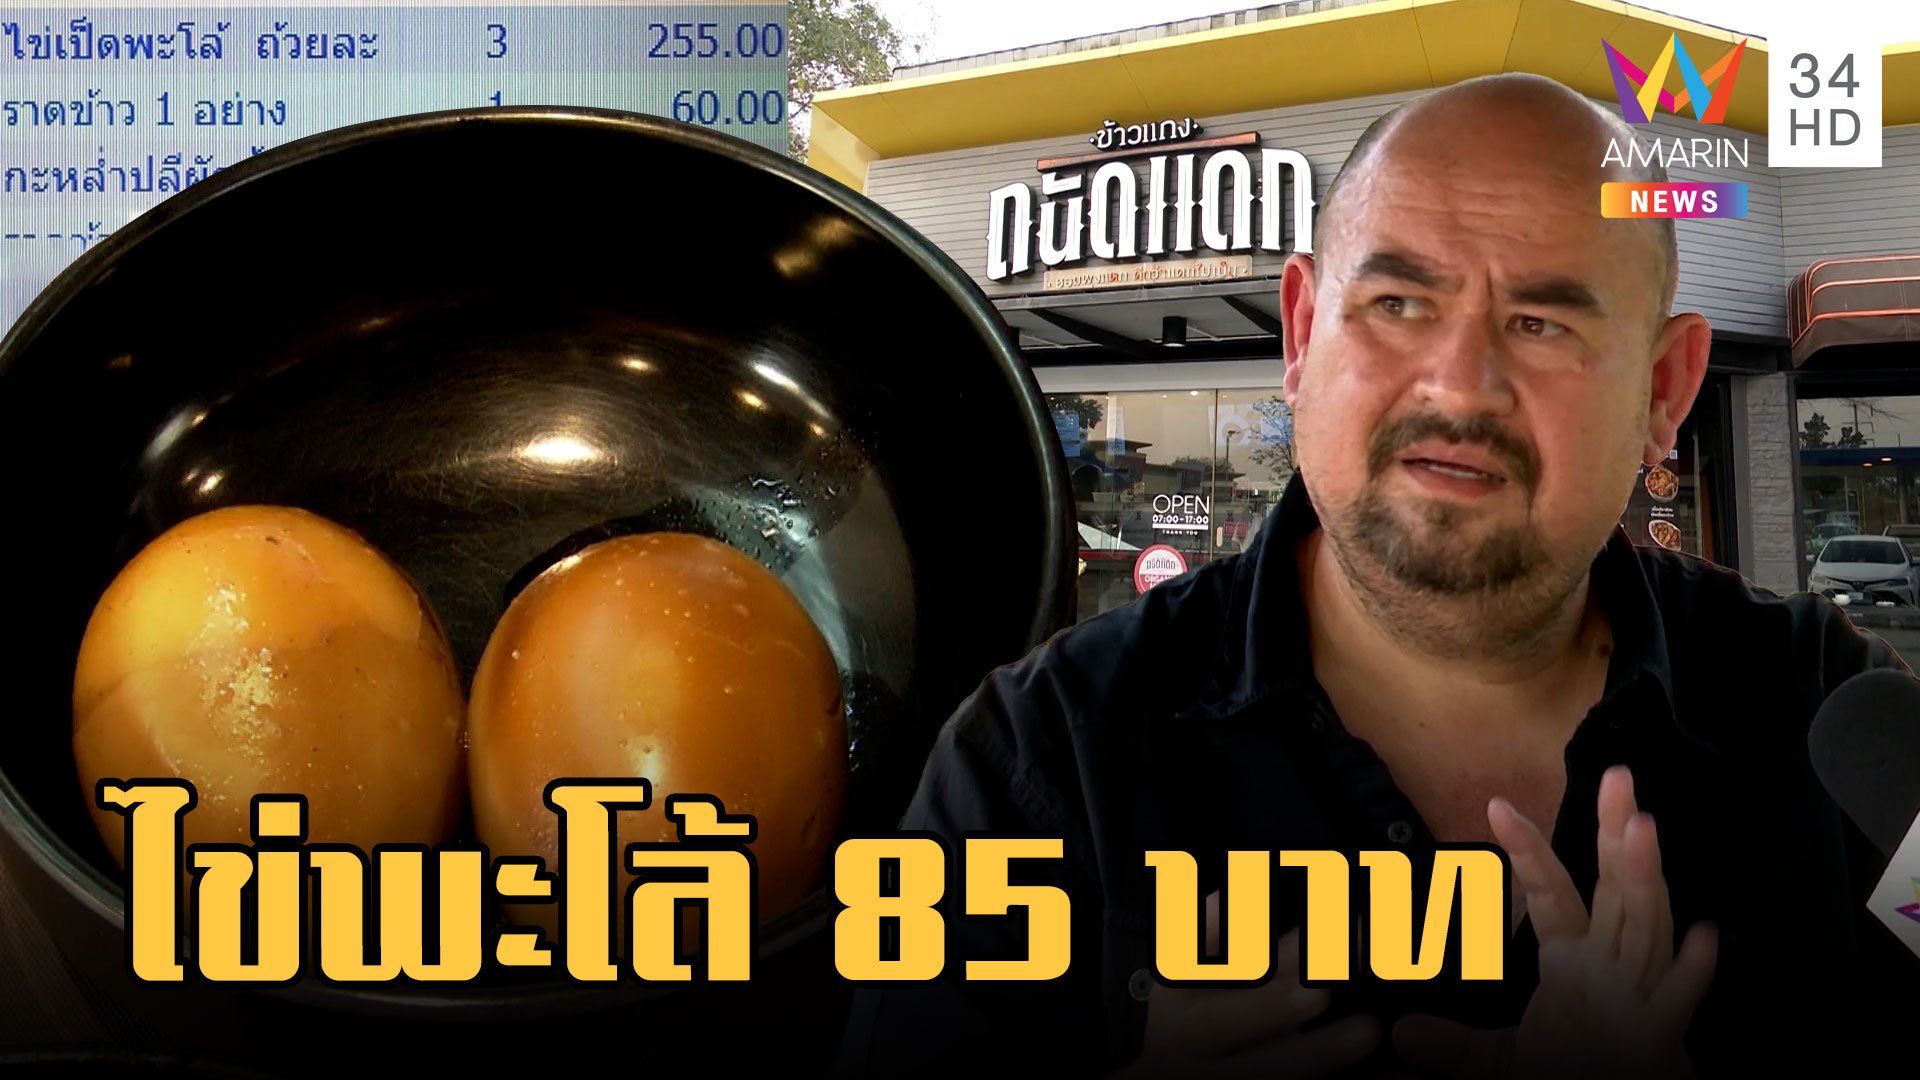 ดราม่า! ไข่พะโล้ "หม่อมถนัดแดก" 2 ฟอง 85 บาท | ข่าวอรุณอมรินทร์ | 3 ก.พ. 66 | AMARIN TVHD34